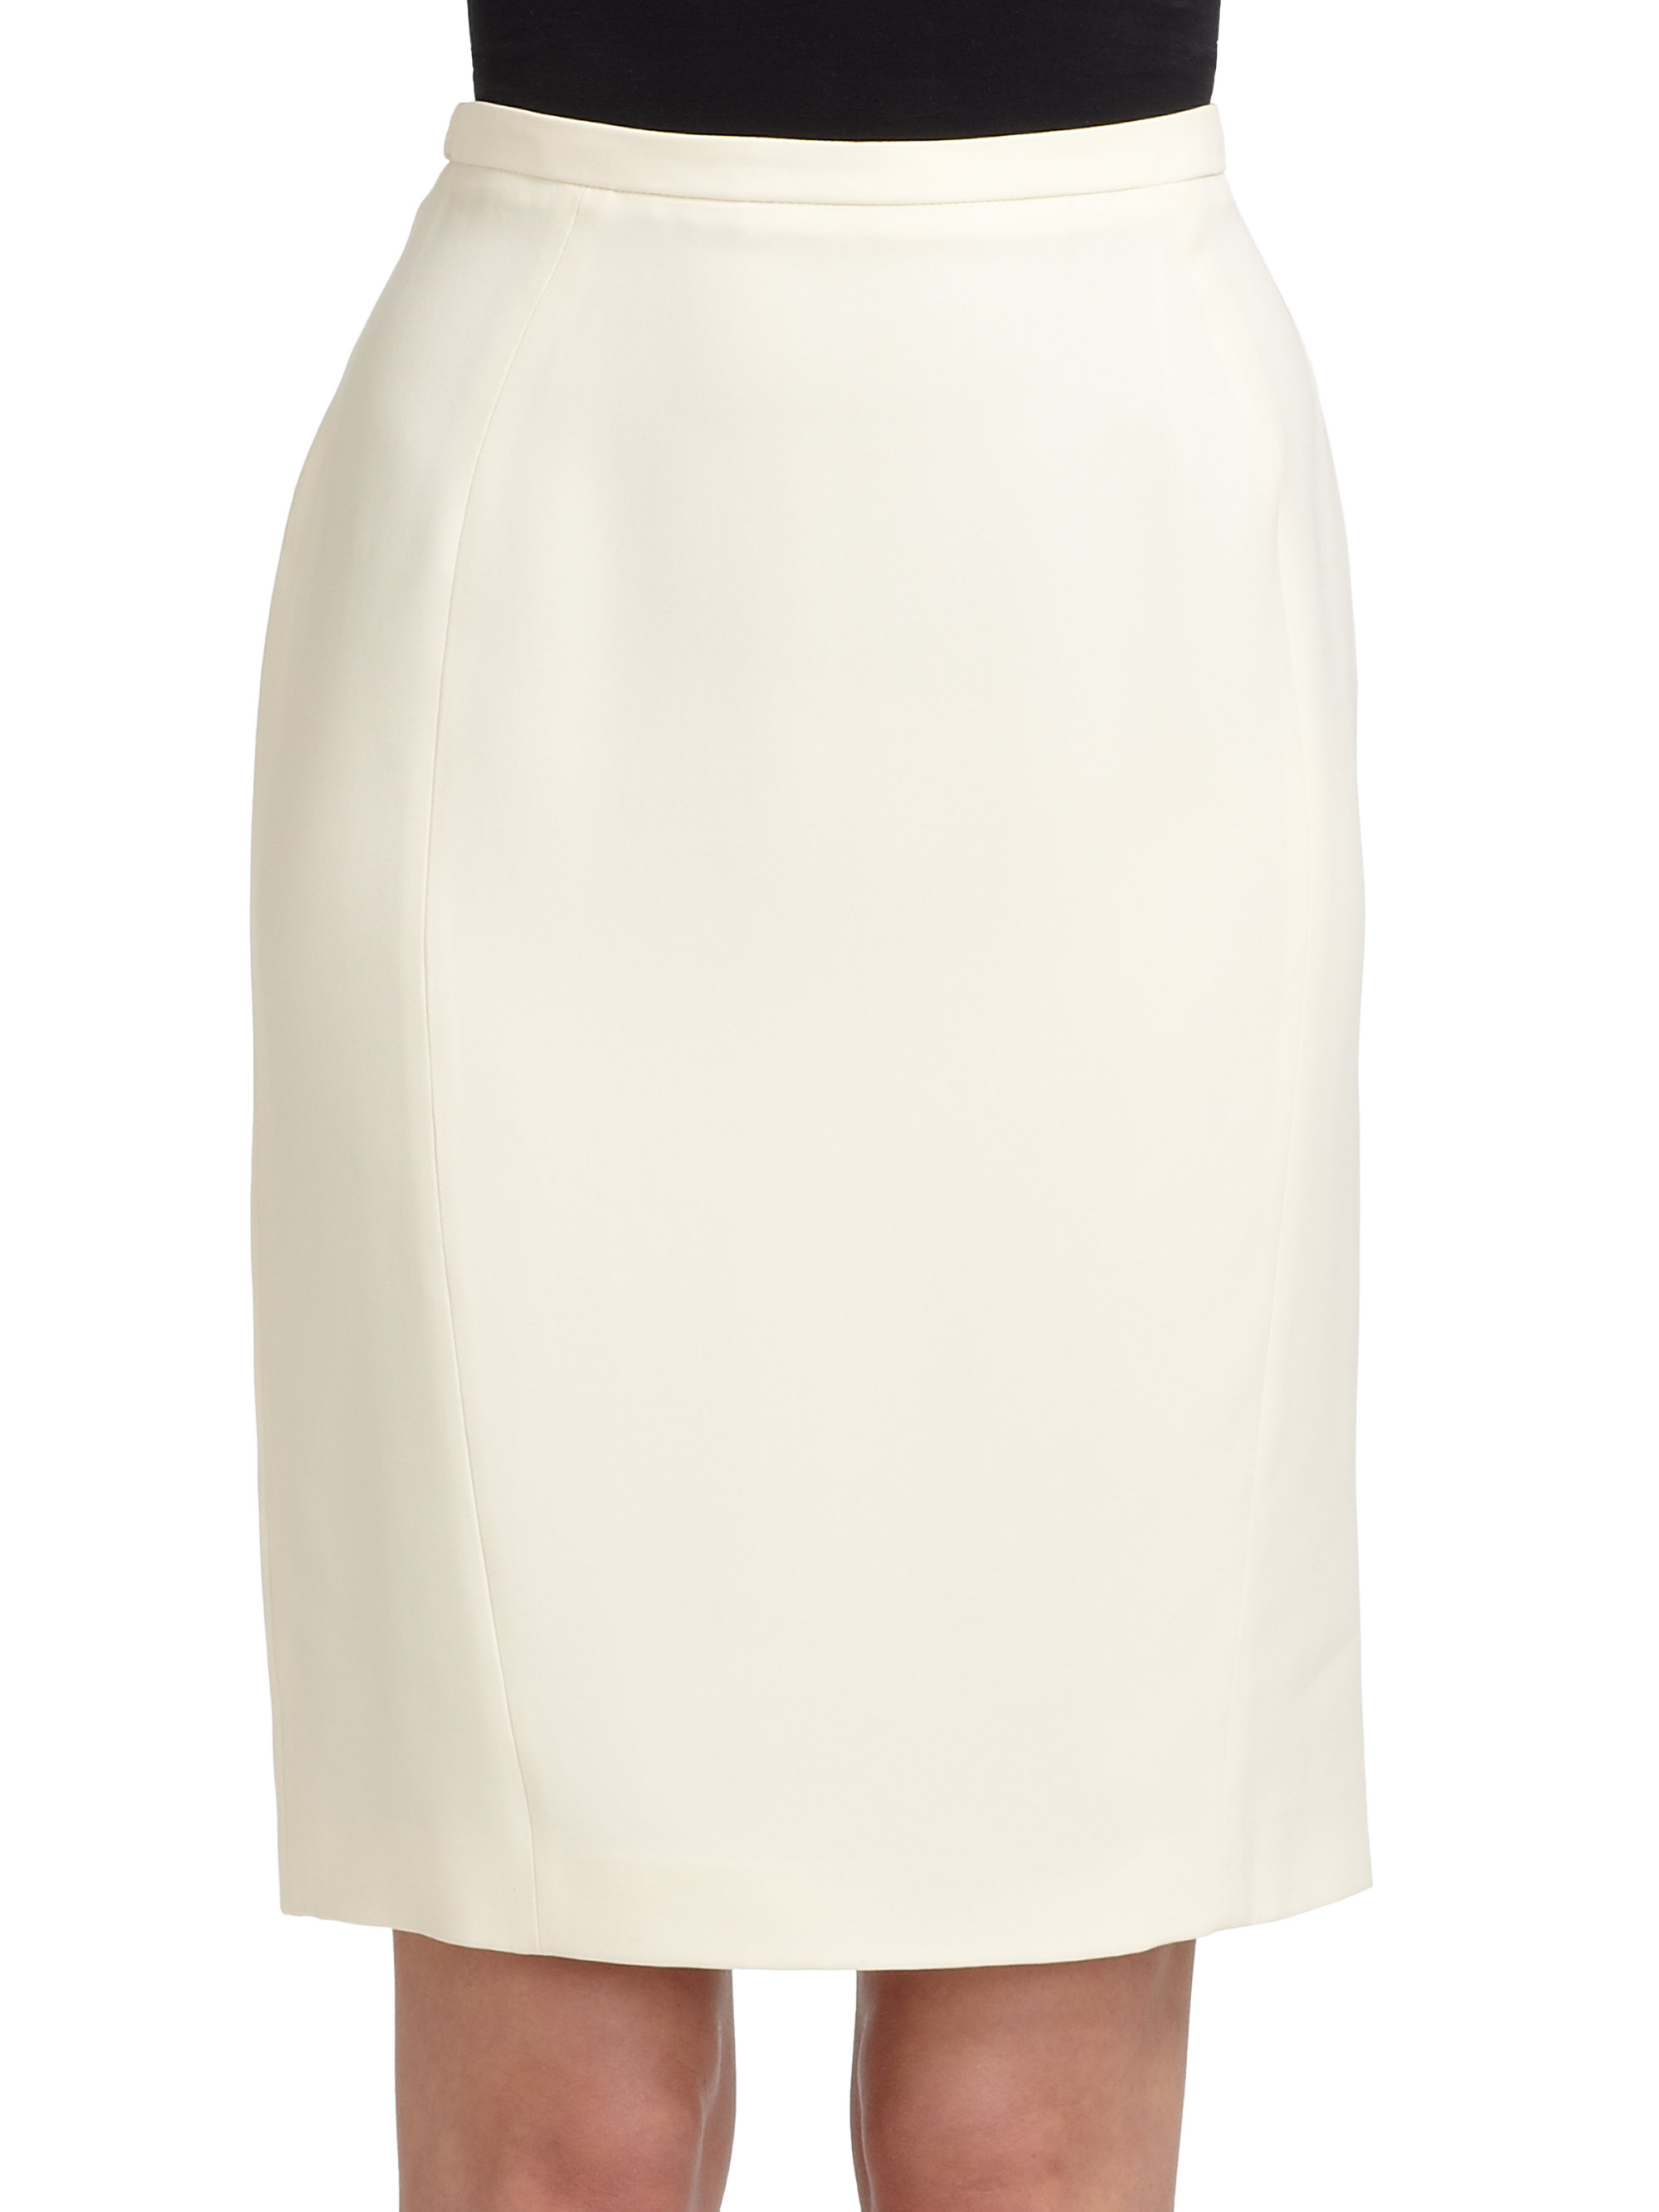 Giorgio armani Seamed Pencil Skirt in White | Lyst